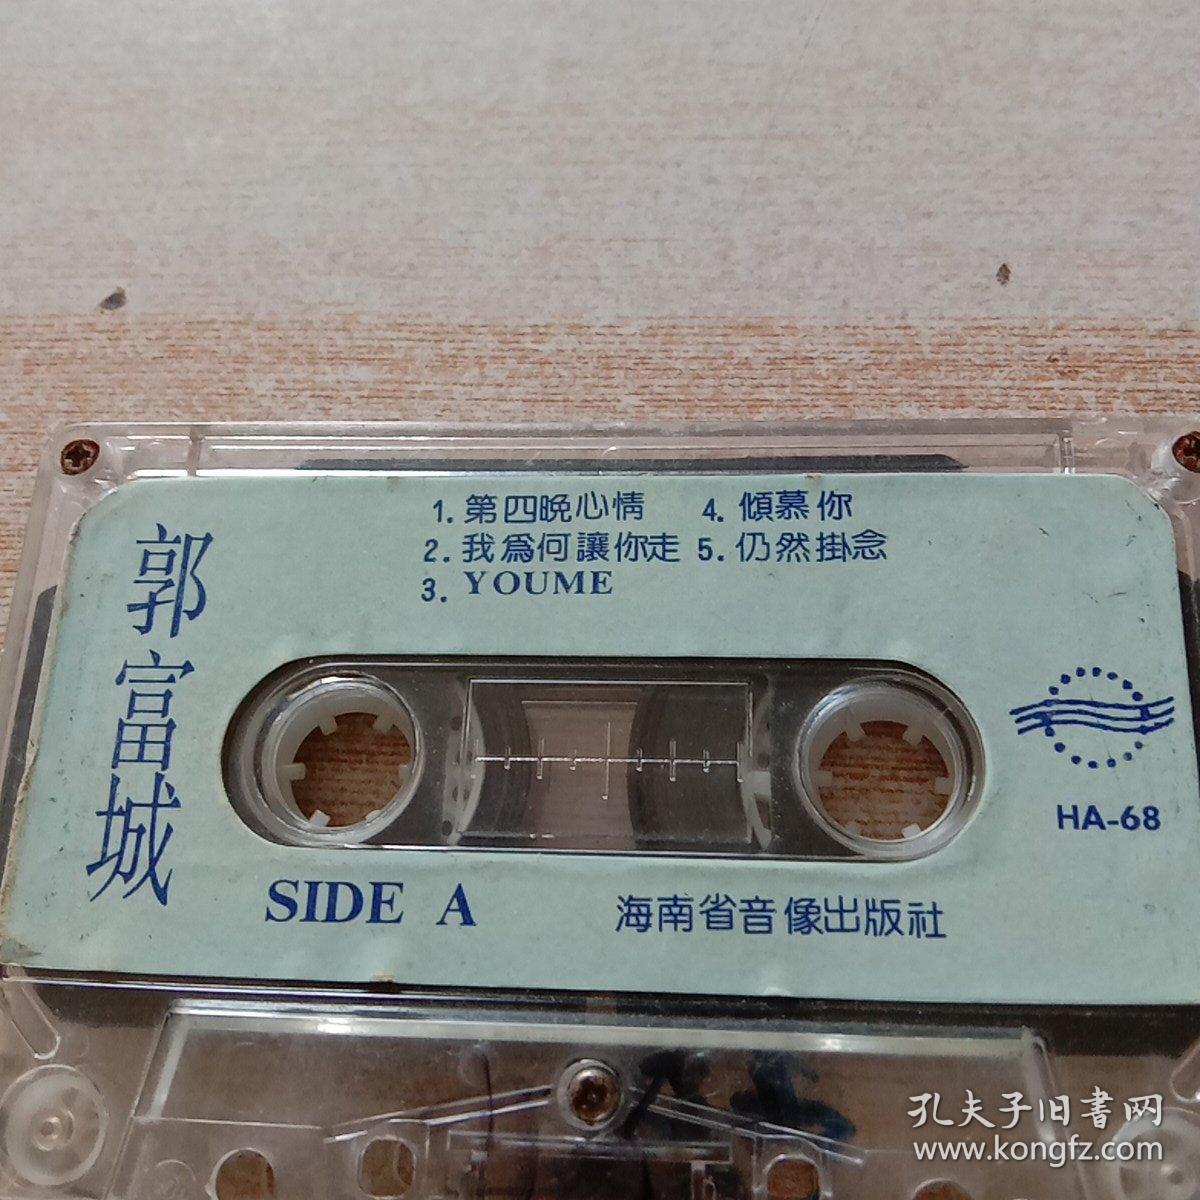 磁带:郭富城、粤语版、第四晚心情